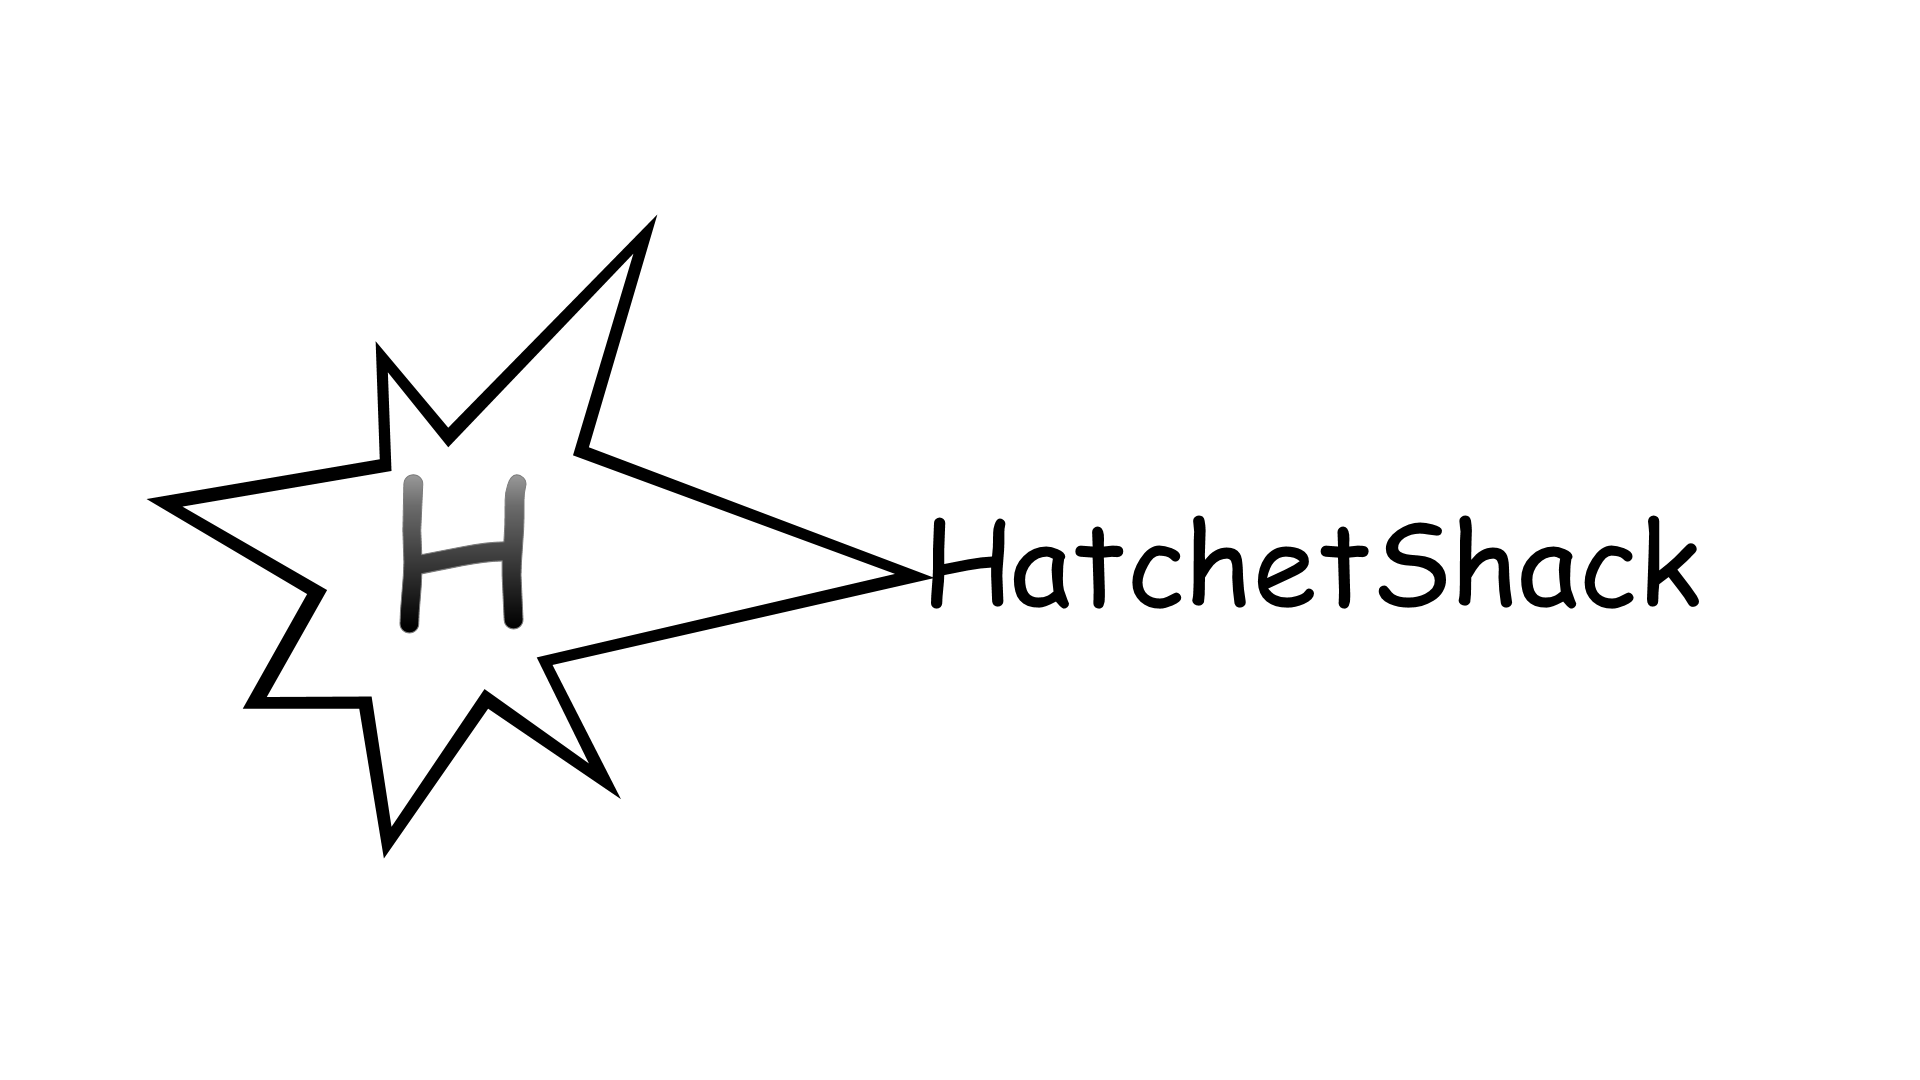 HatchetShack